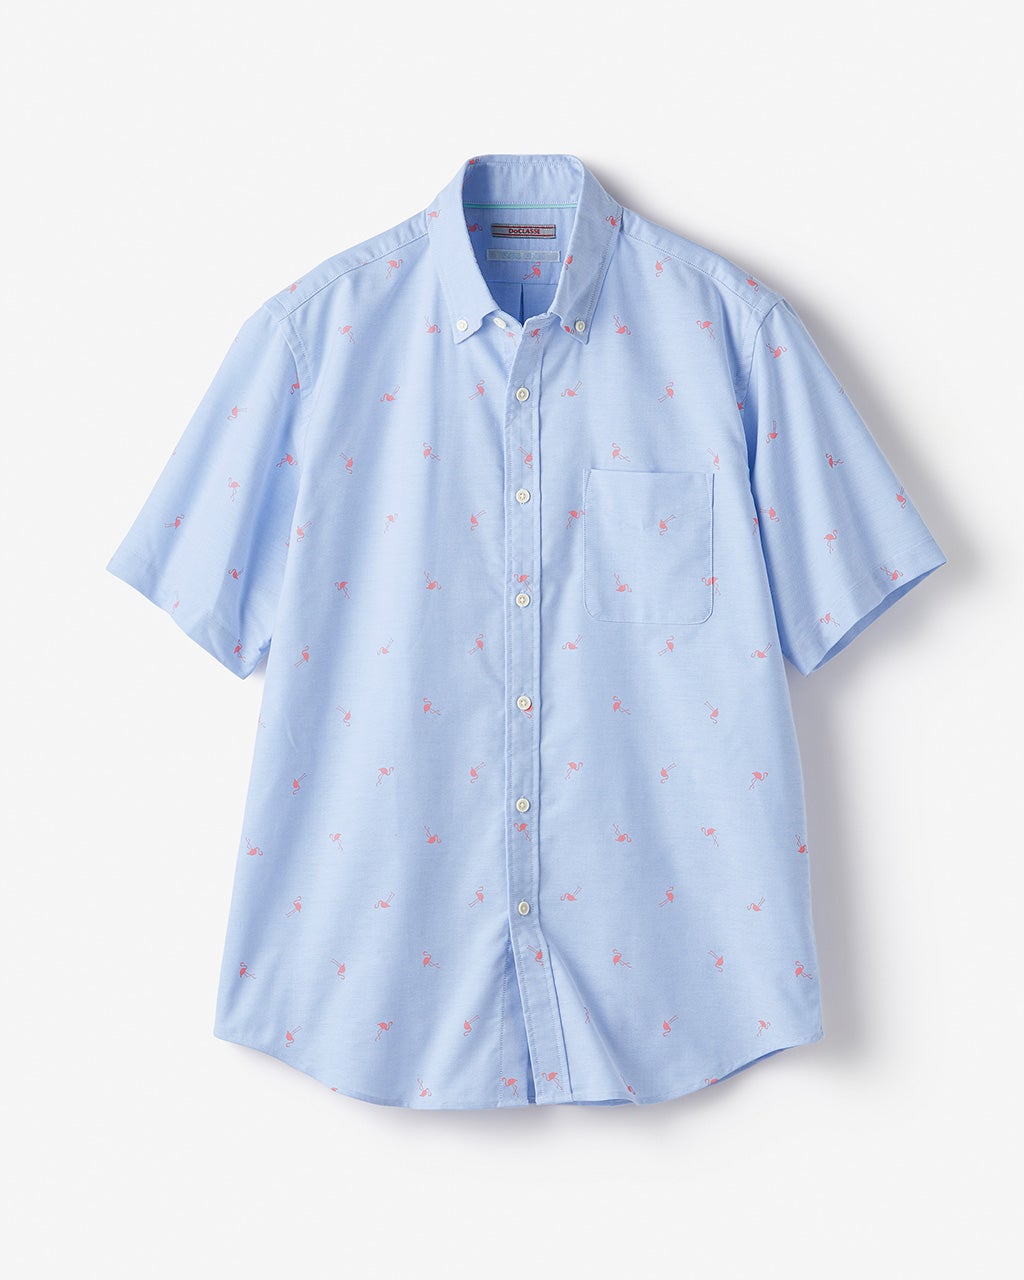 ピュアファインオックスシャツ半袖/40代50代からのレディース・メンズ